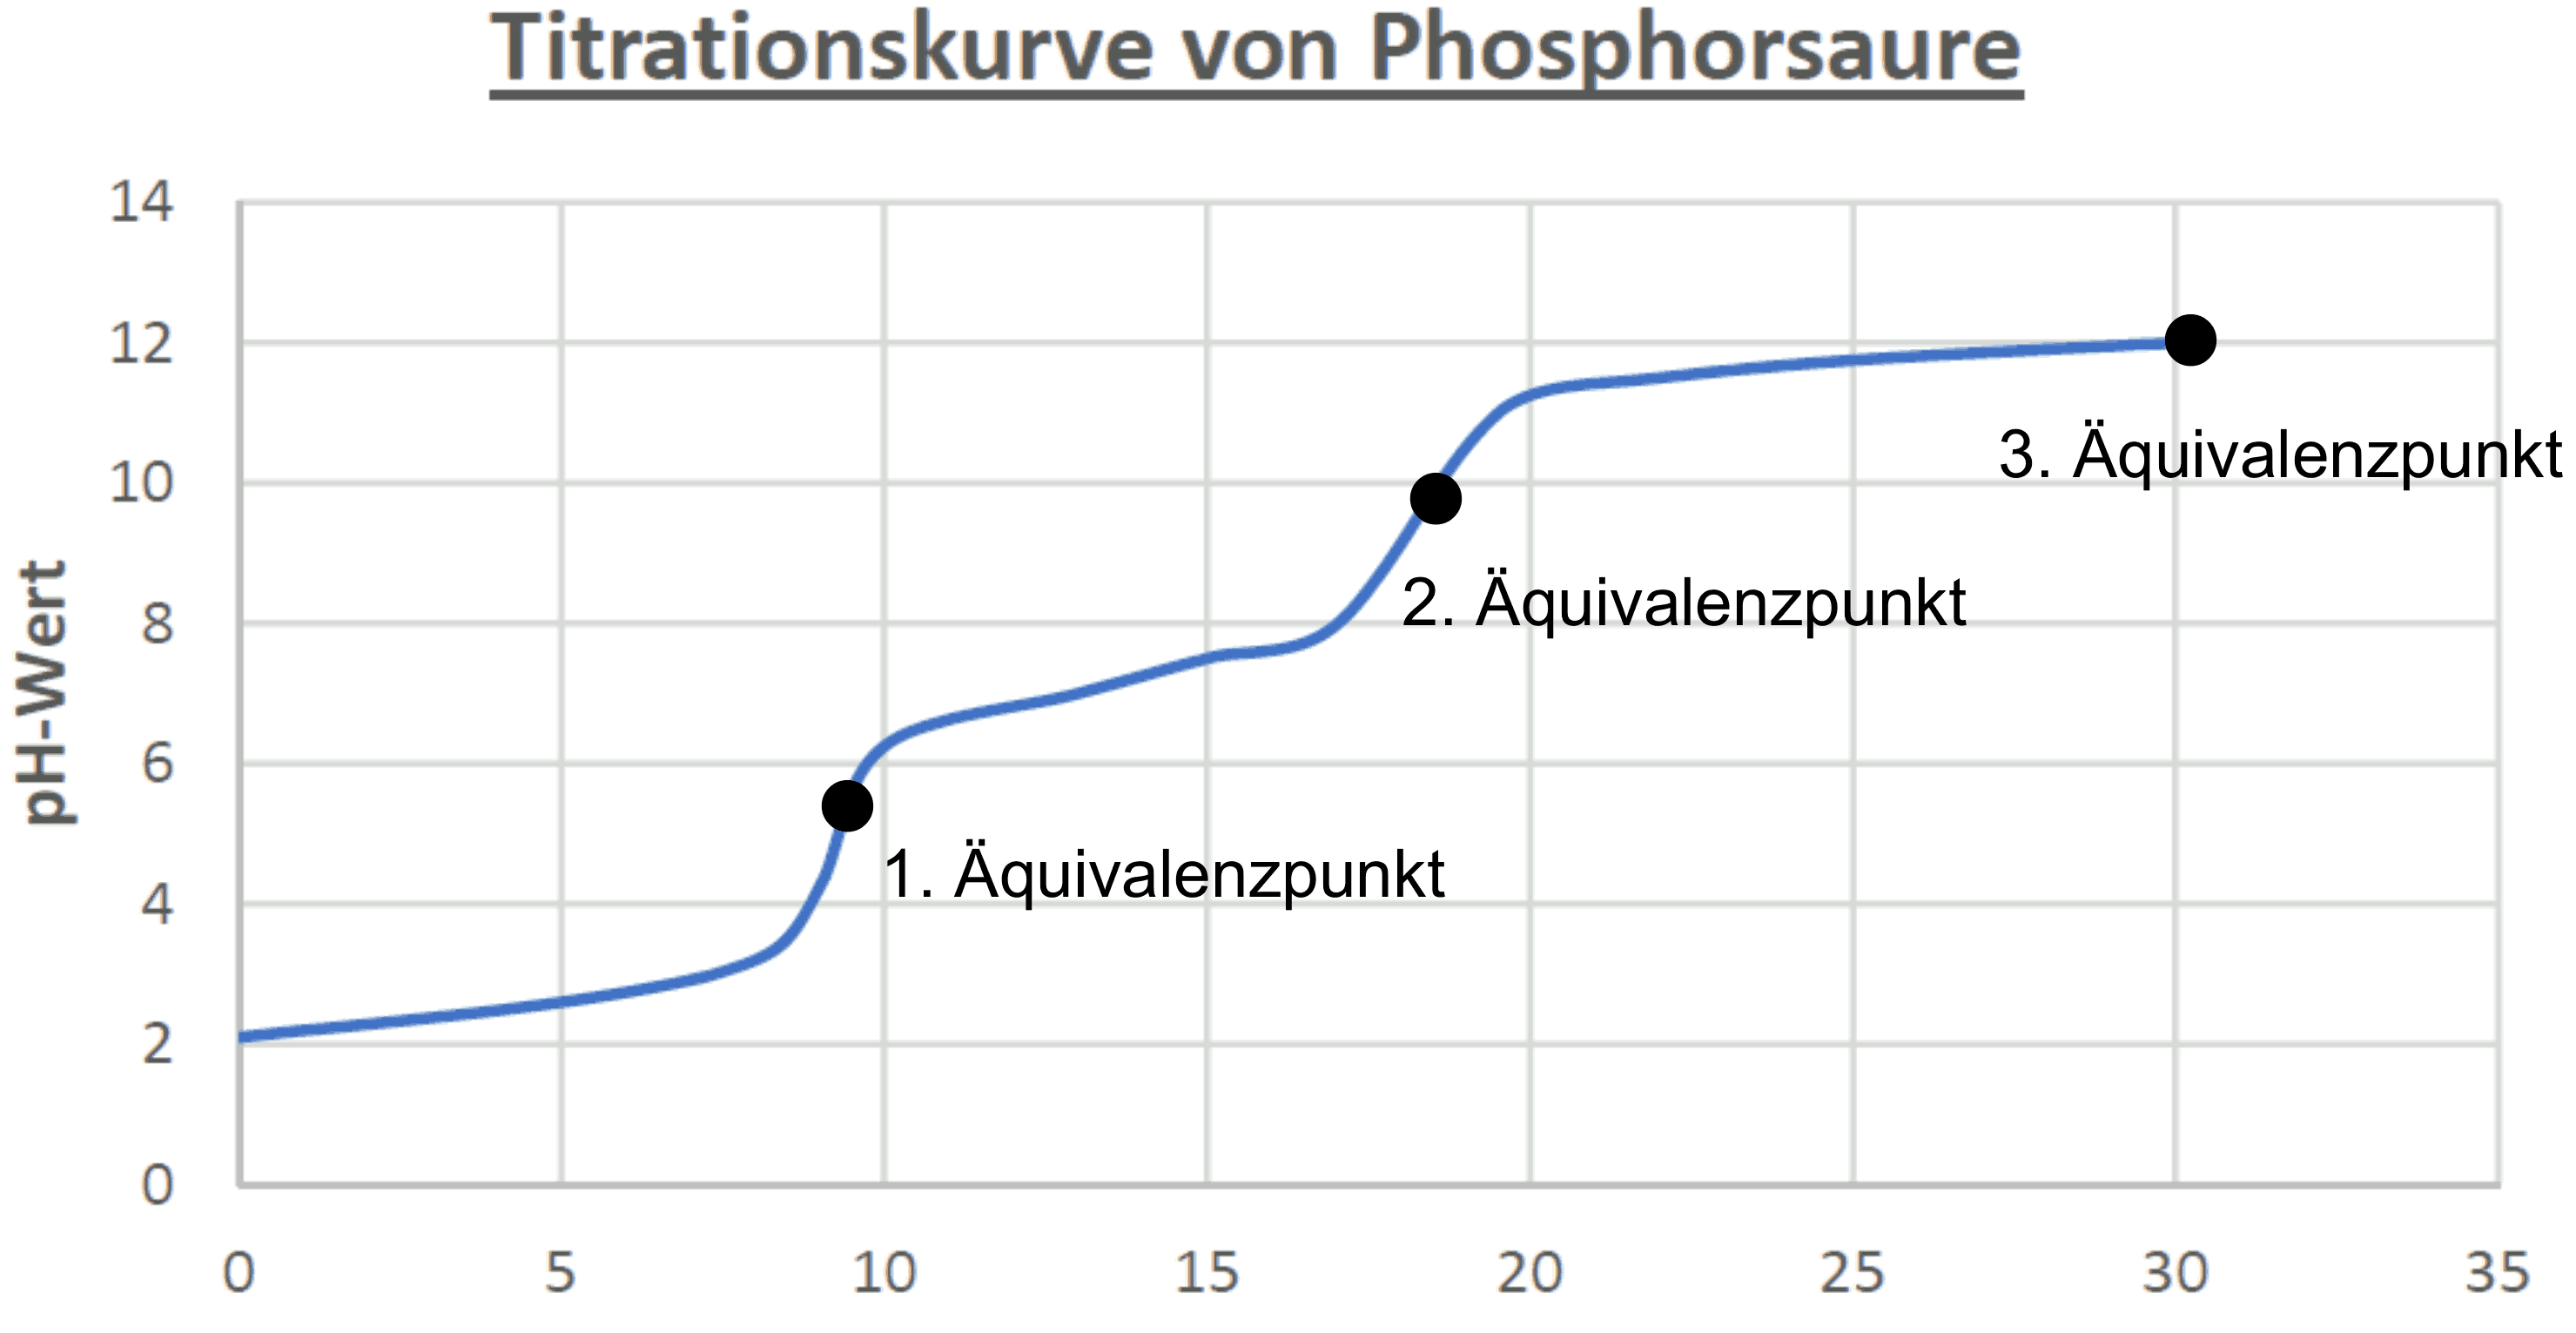 Titrationskurve von Phosphorsäure